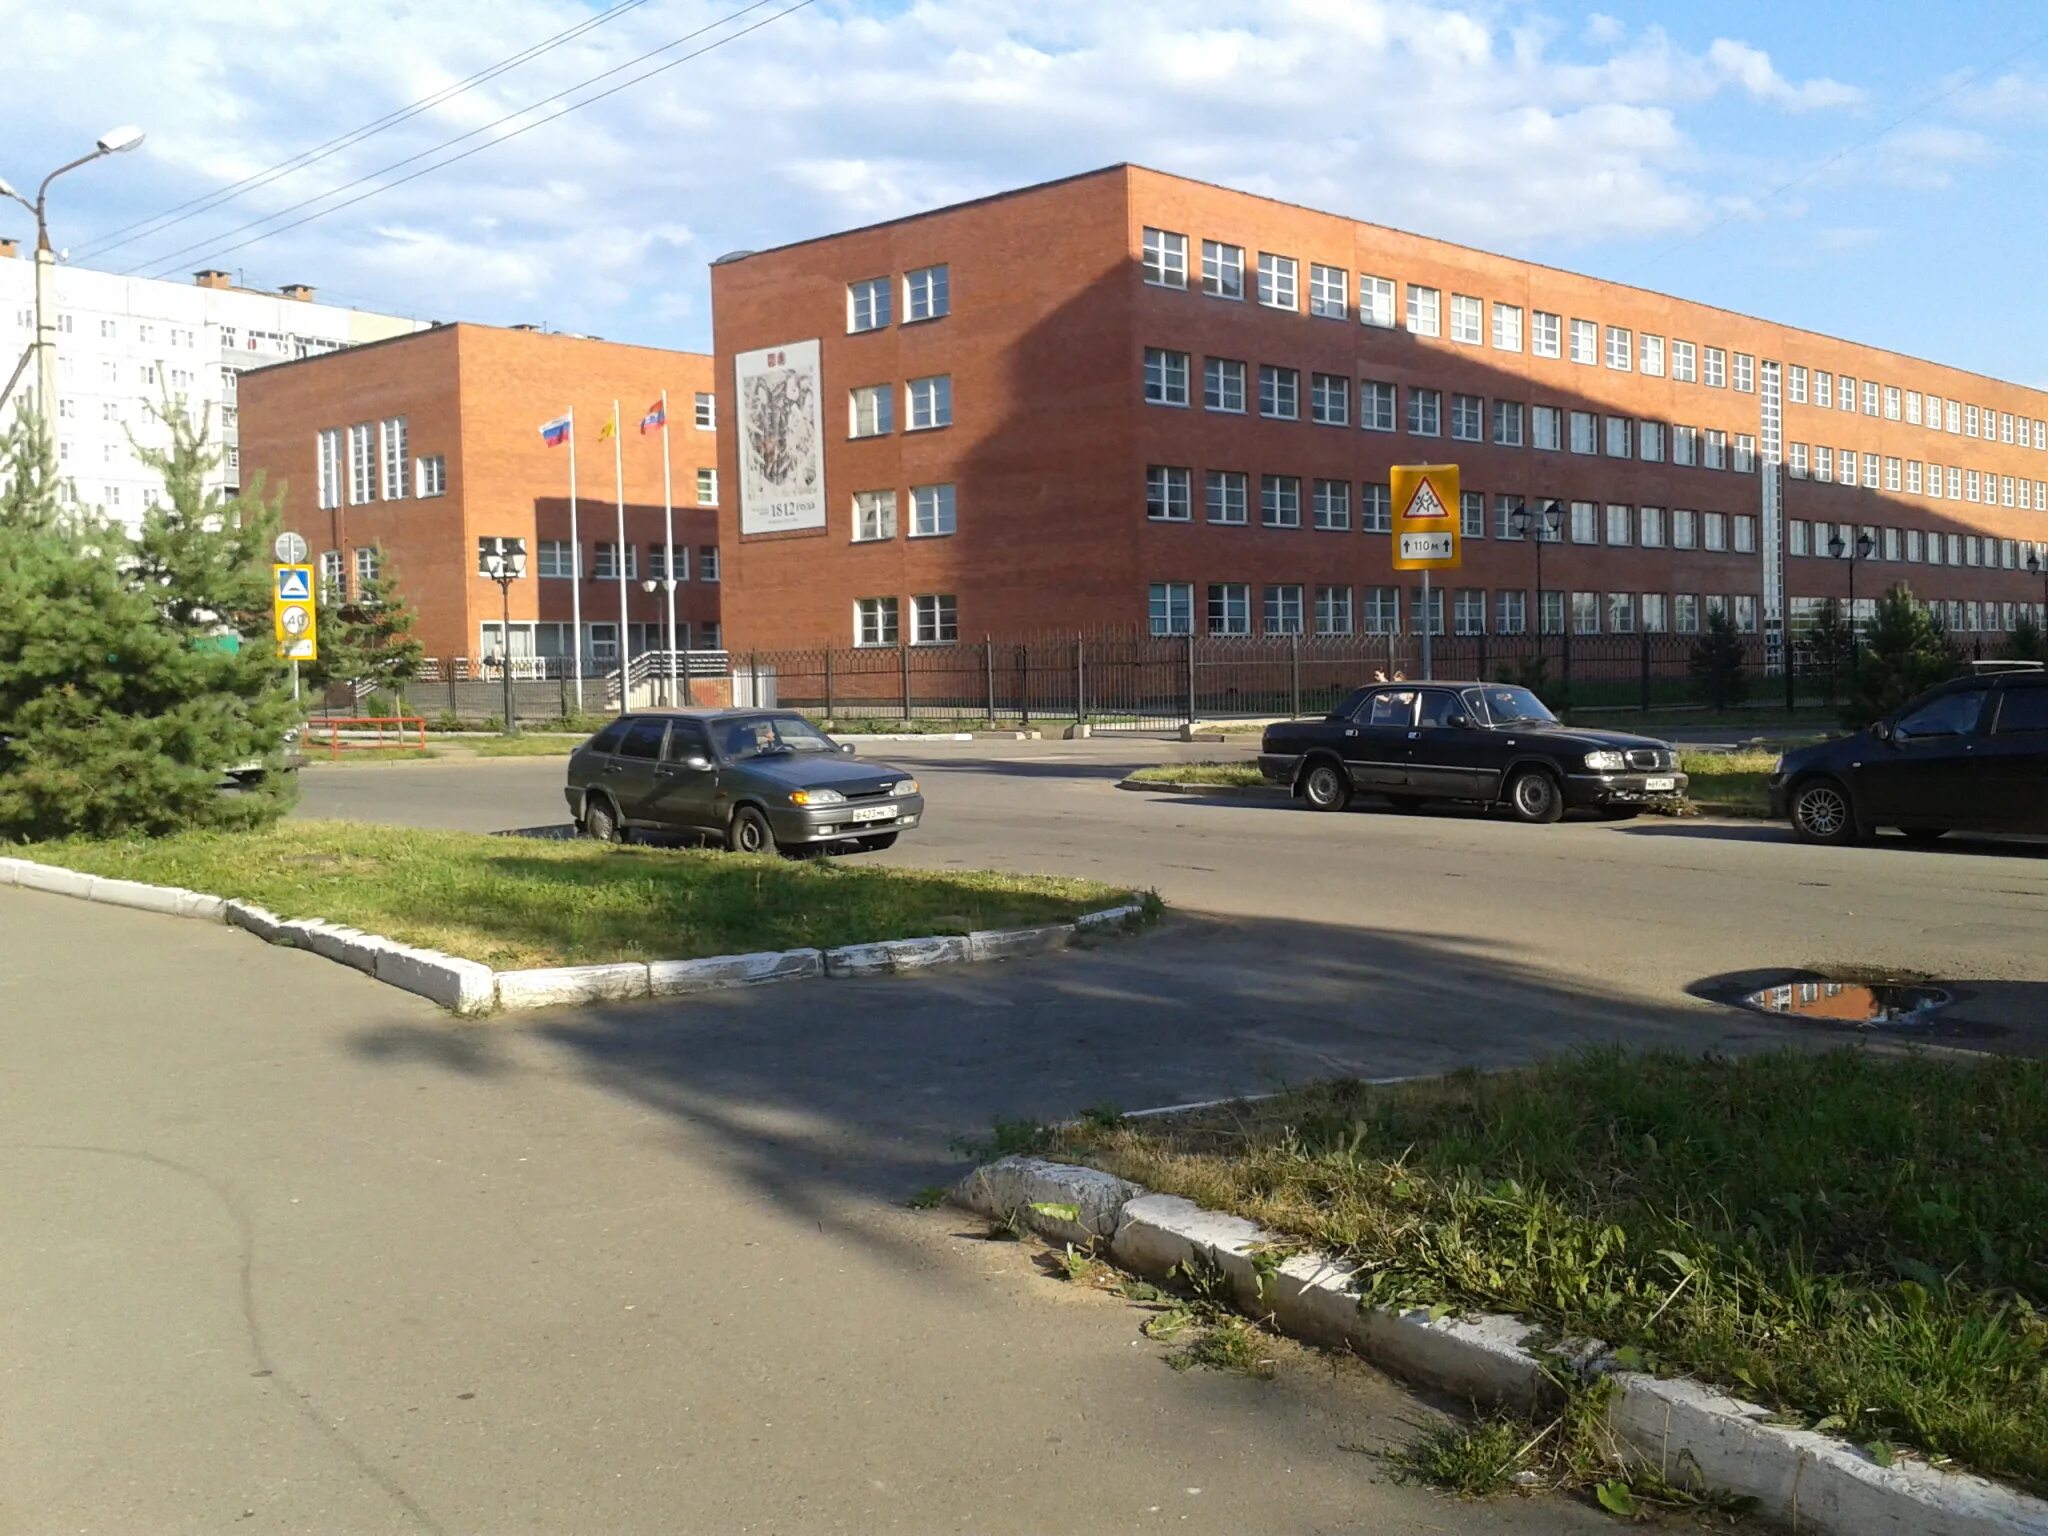 12 Школа Рыбинск. Школа 31 Рыбинск. Школа 12 Рыбинск фото. Рыбинск гора 12 школа.